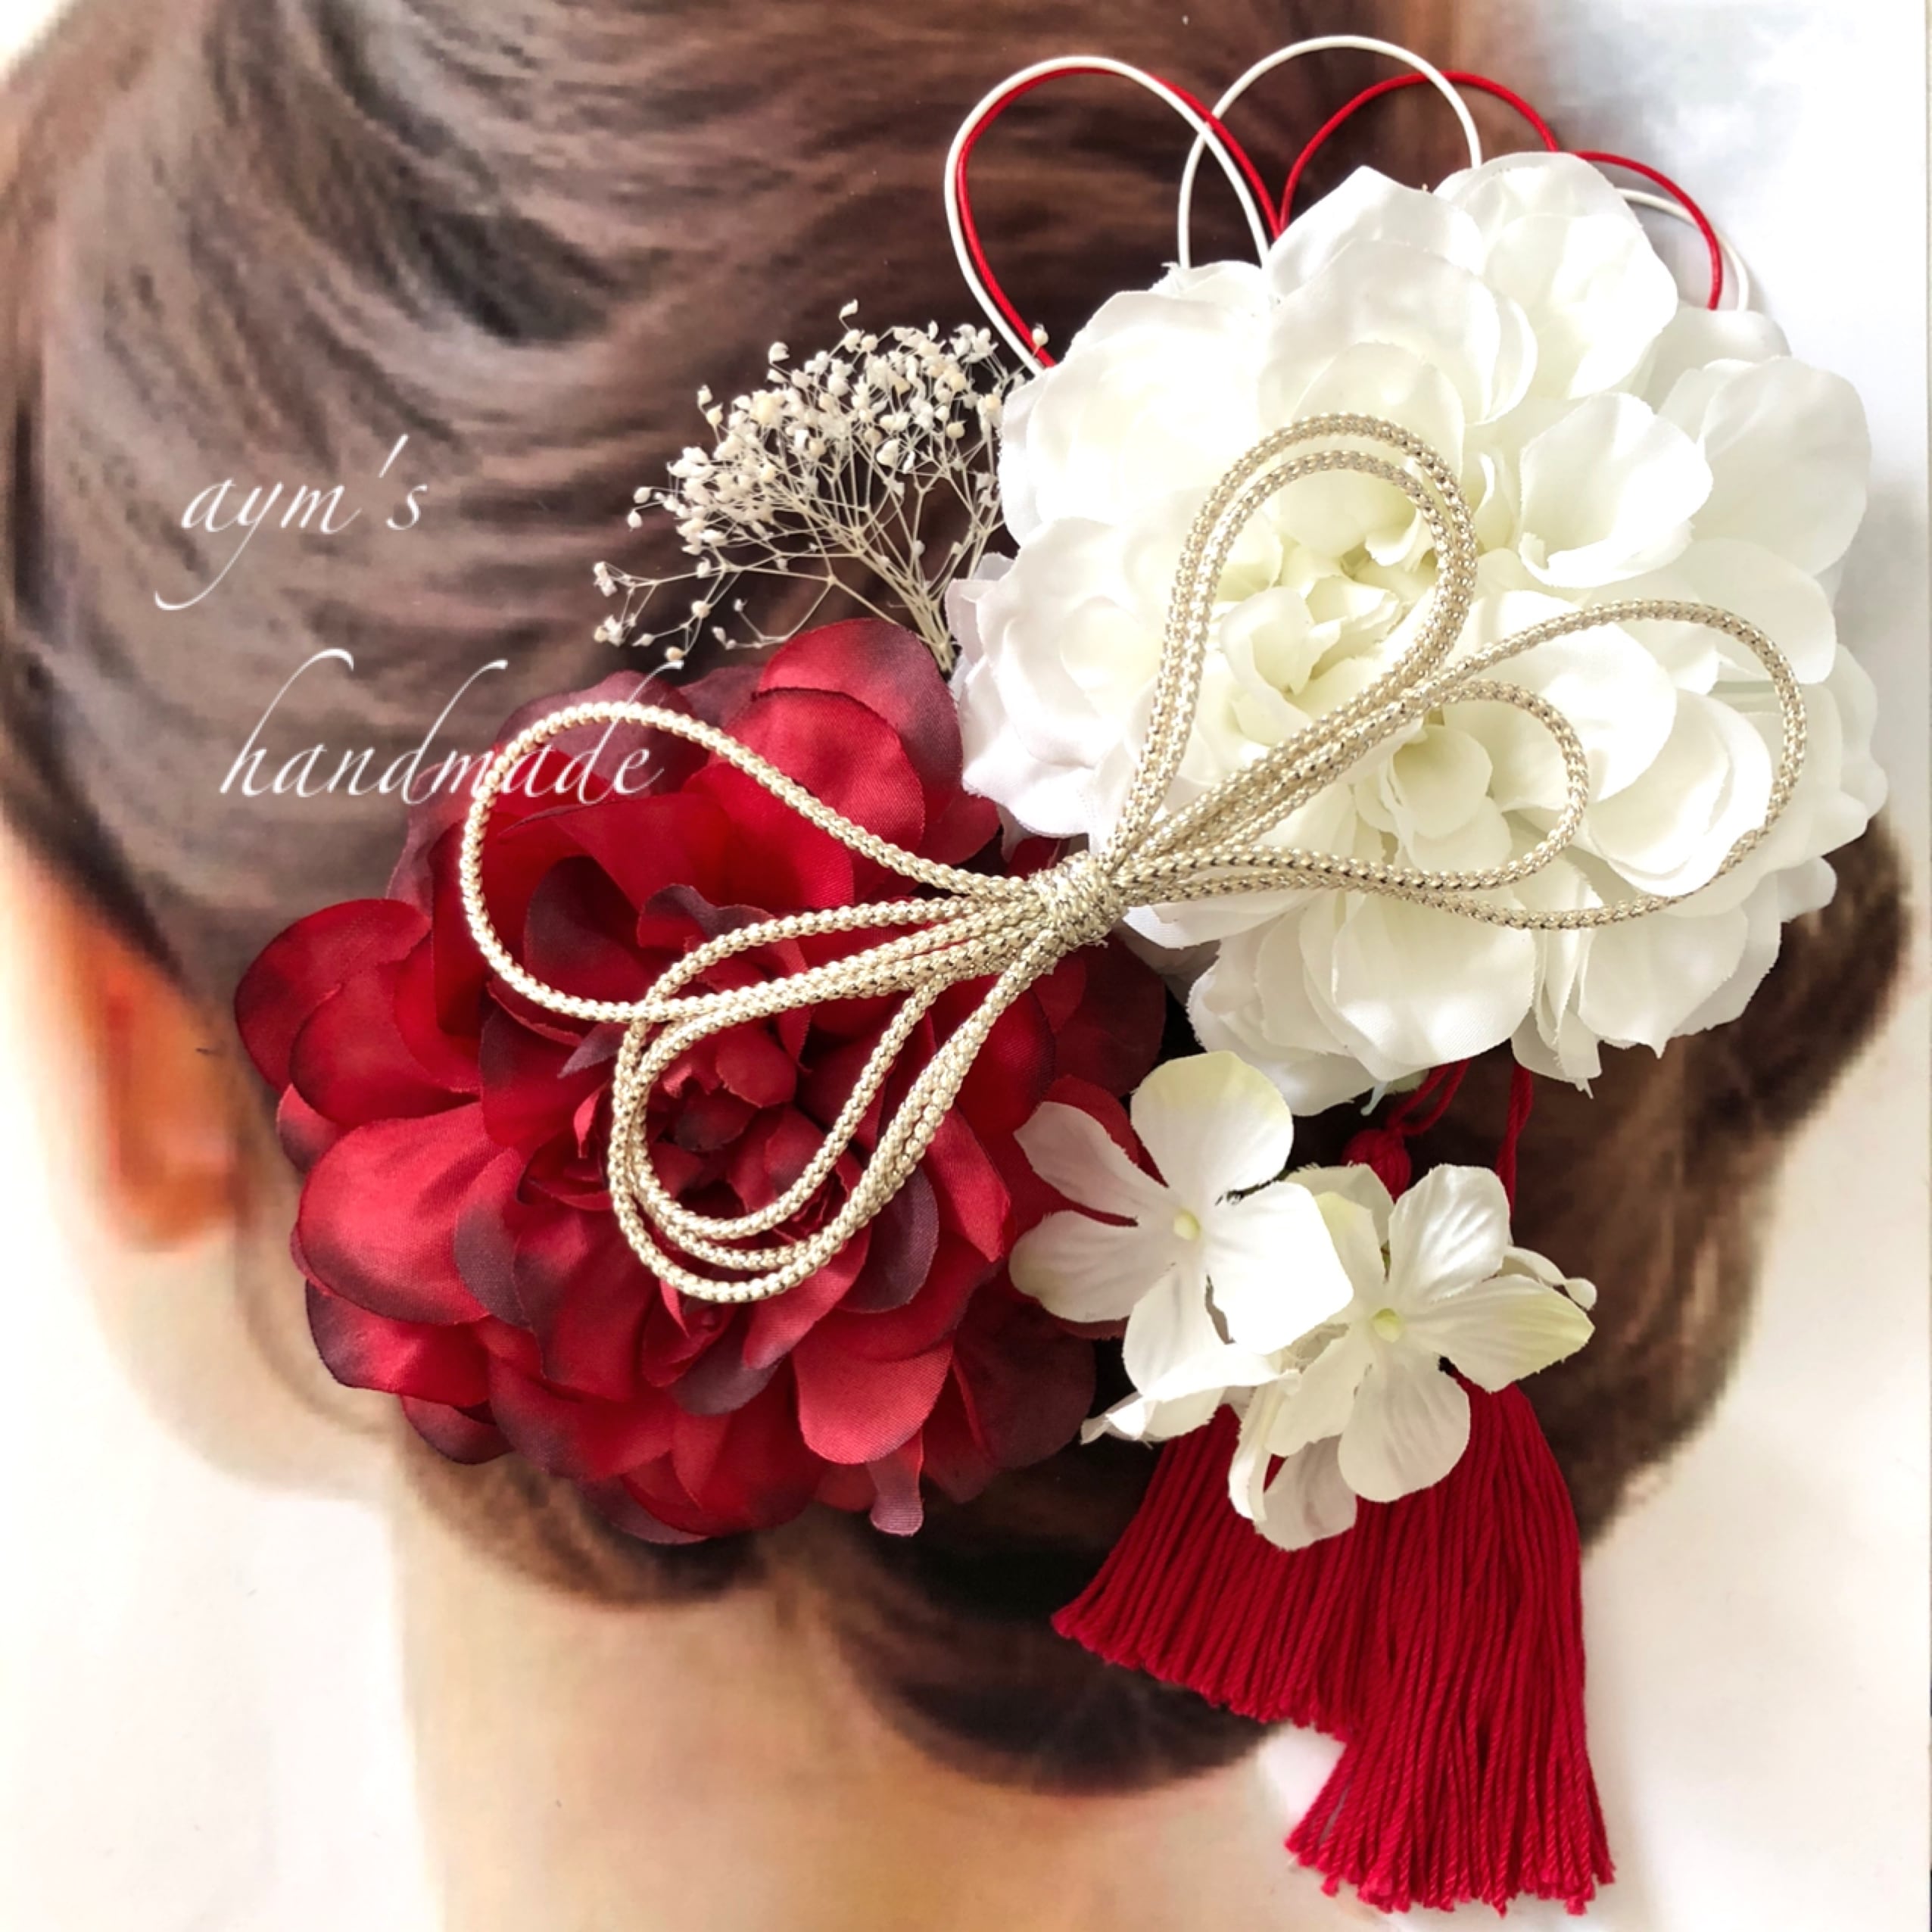 和装大人の髪飾り〜レッド&ホワイト 紅白 結婚式 成人式 卒業式 振袖